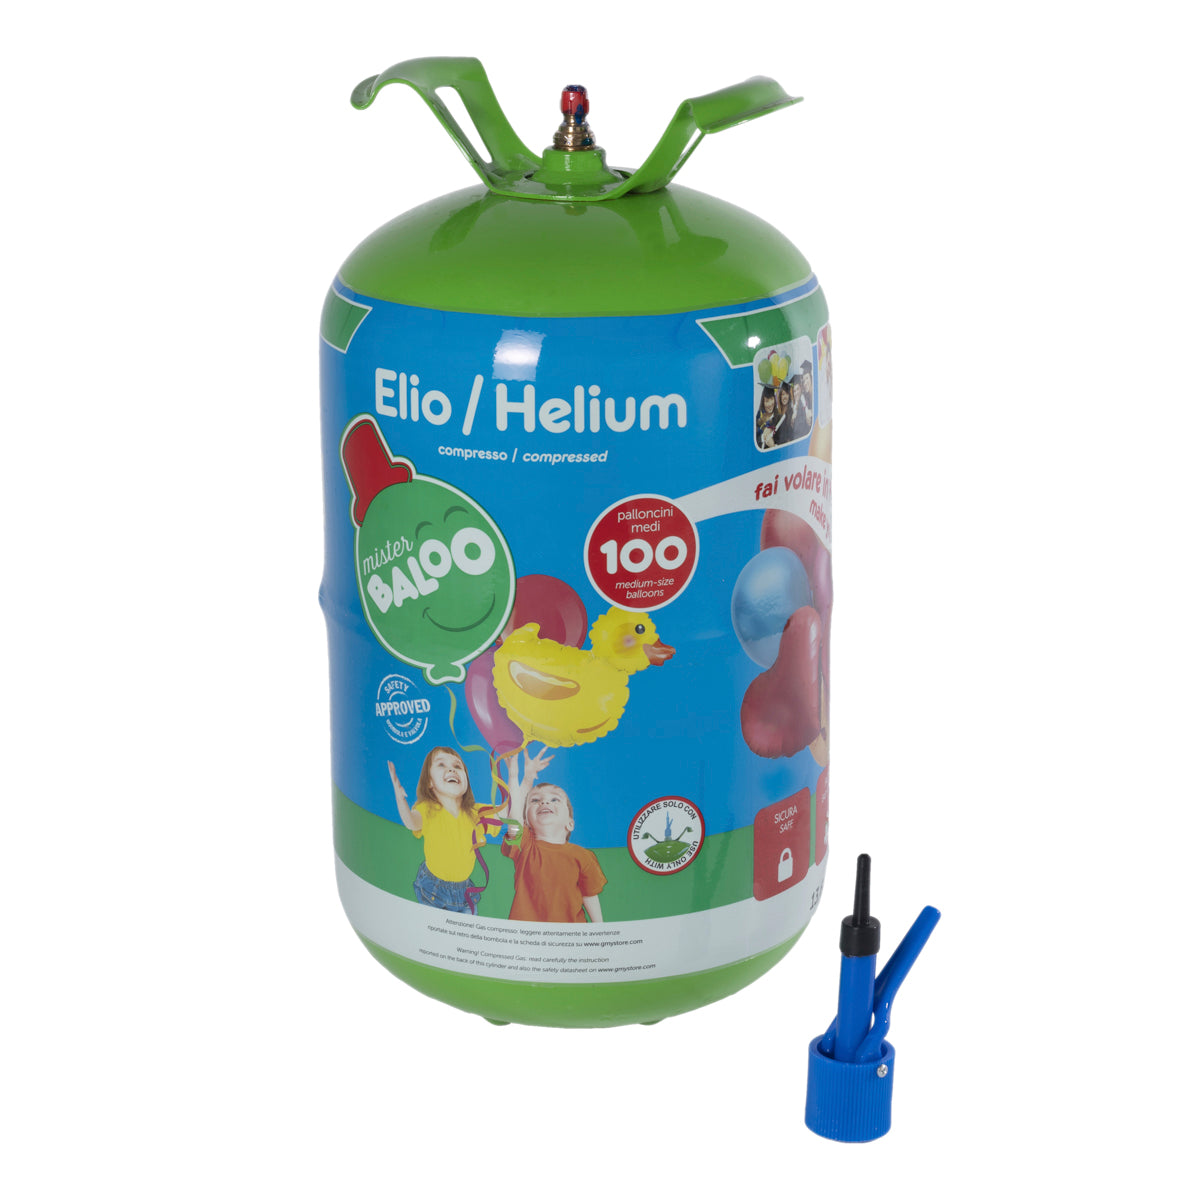 Mister Baloo bombola elio usa e getta per 100 palloncini Non Inclusi